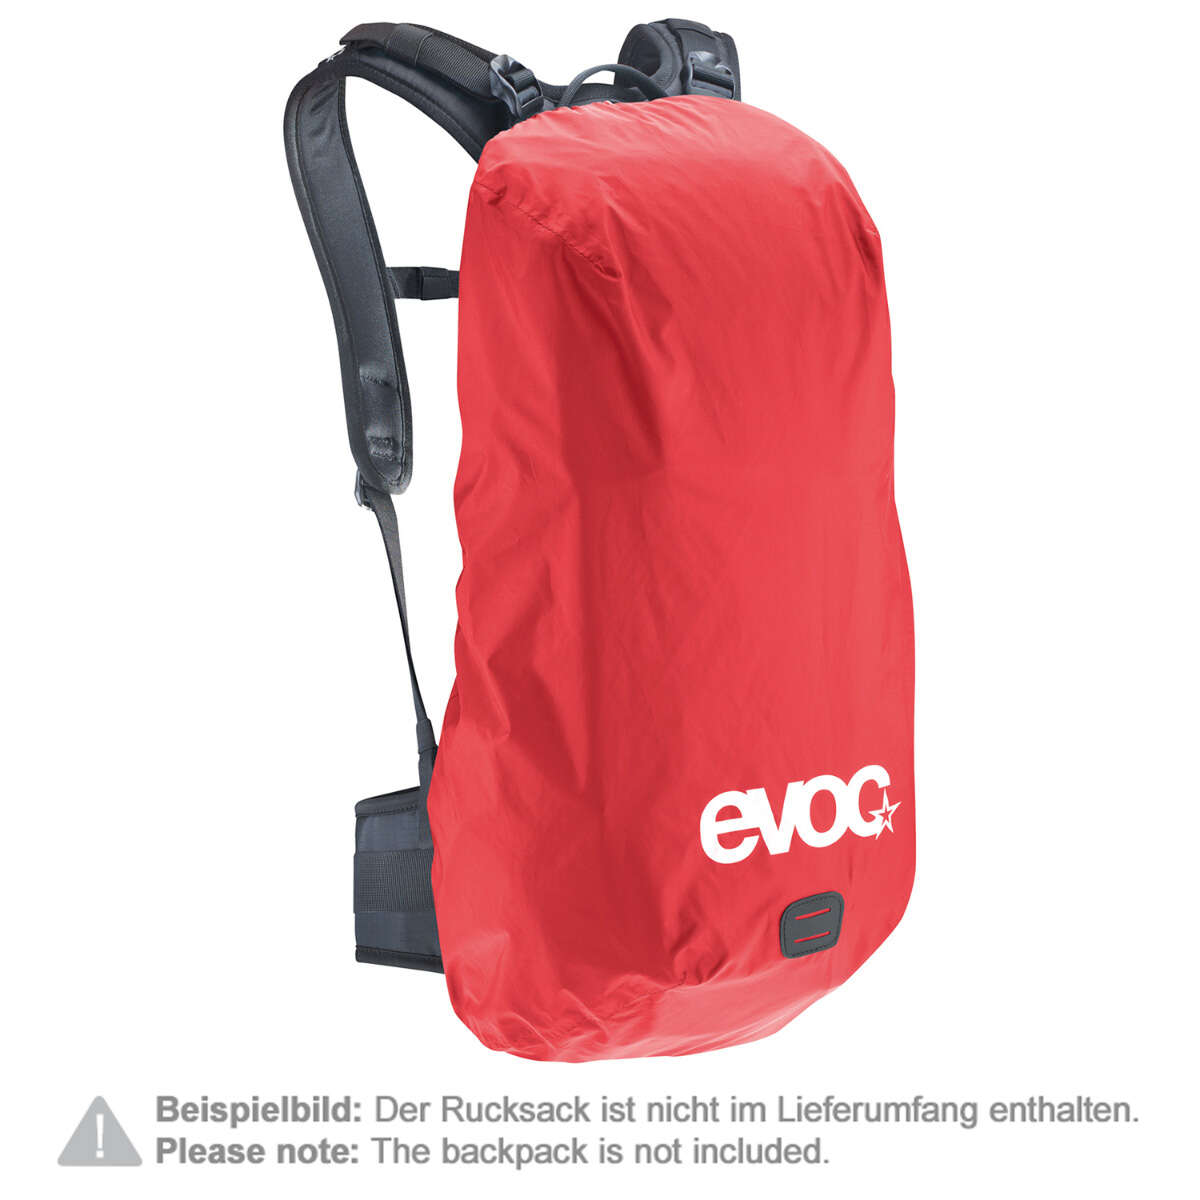 Evoc Backpack Raincover Raincover Sleeve Red, 10-25 Liter